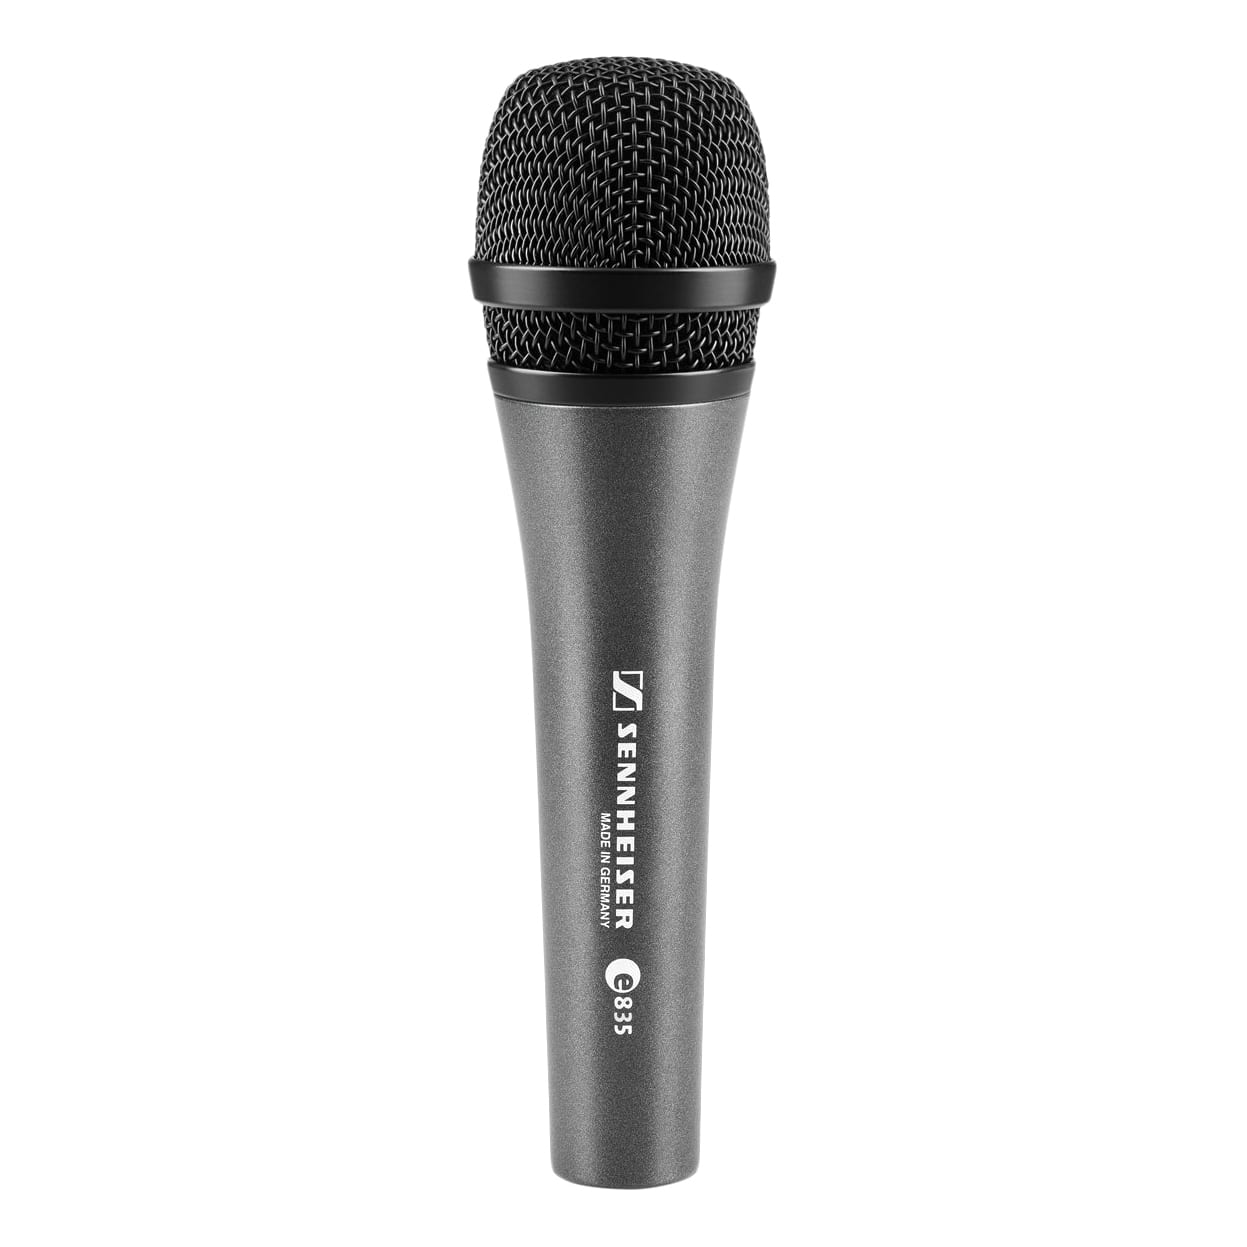 Ручные микрофоны Sennheiser E835 петличные микрофоны sennheiser mke essential omni beige